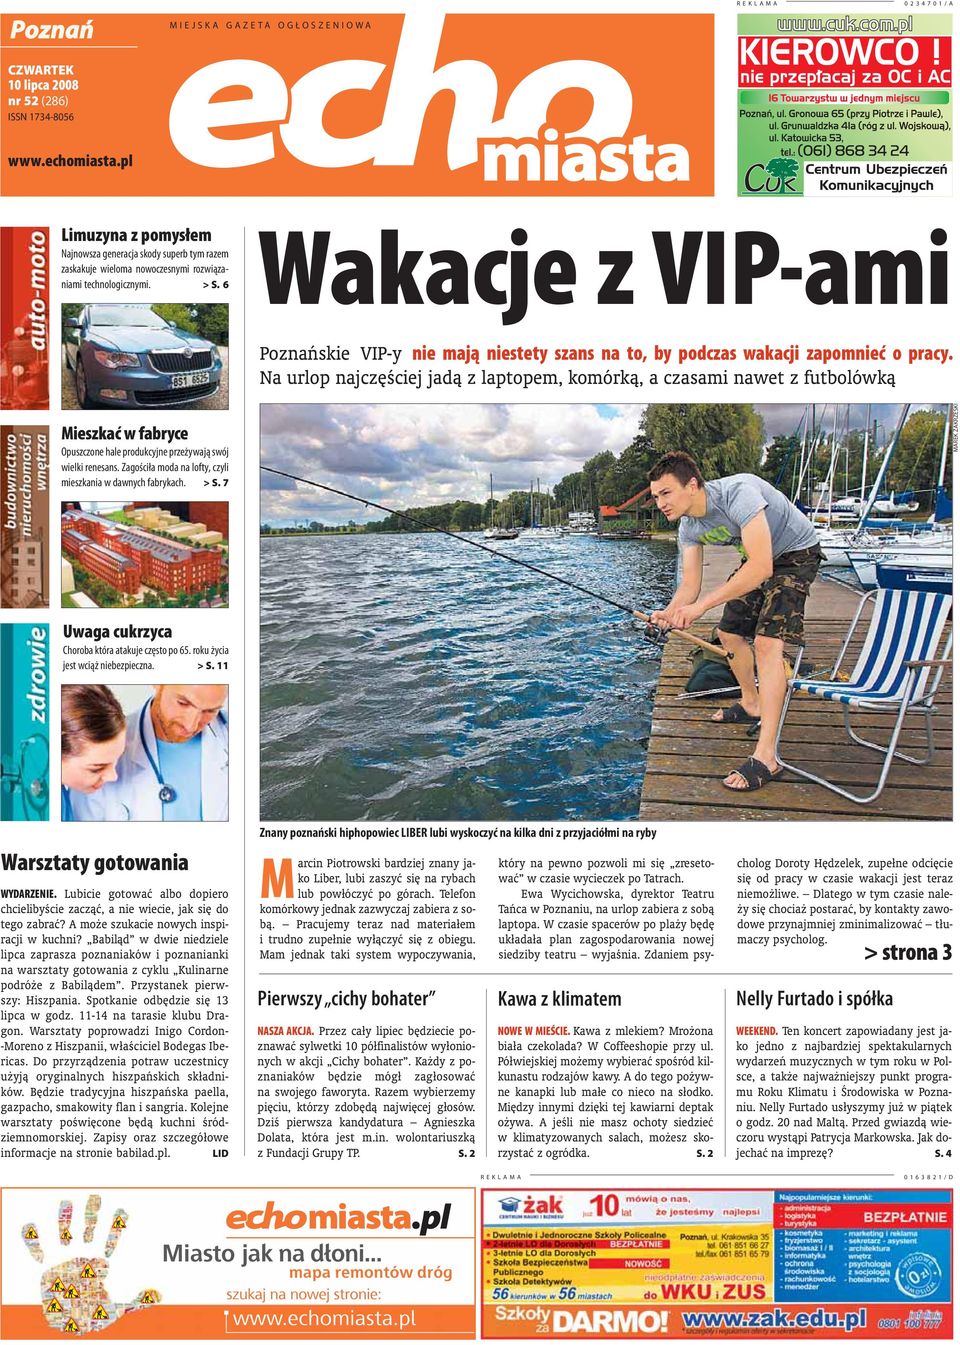 6 Wakacje z VIP-ami Poznańskie VIP-y nie mają niestety szans na to, by podczas wakacji zapomnieć o pracy.